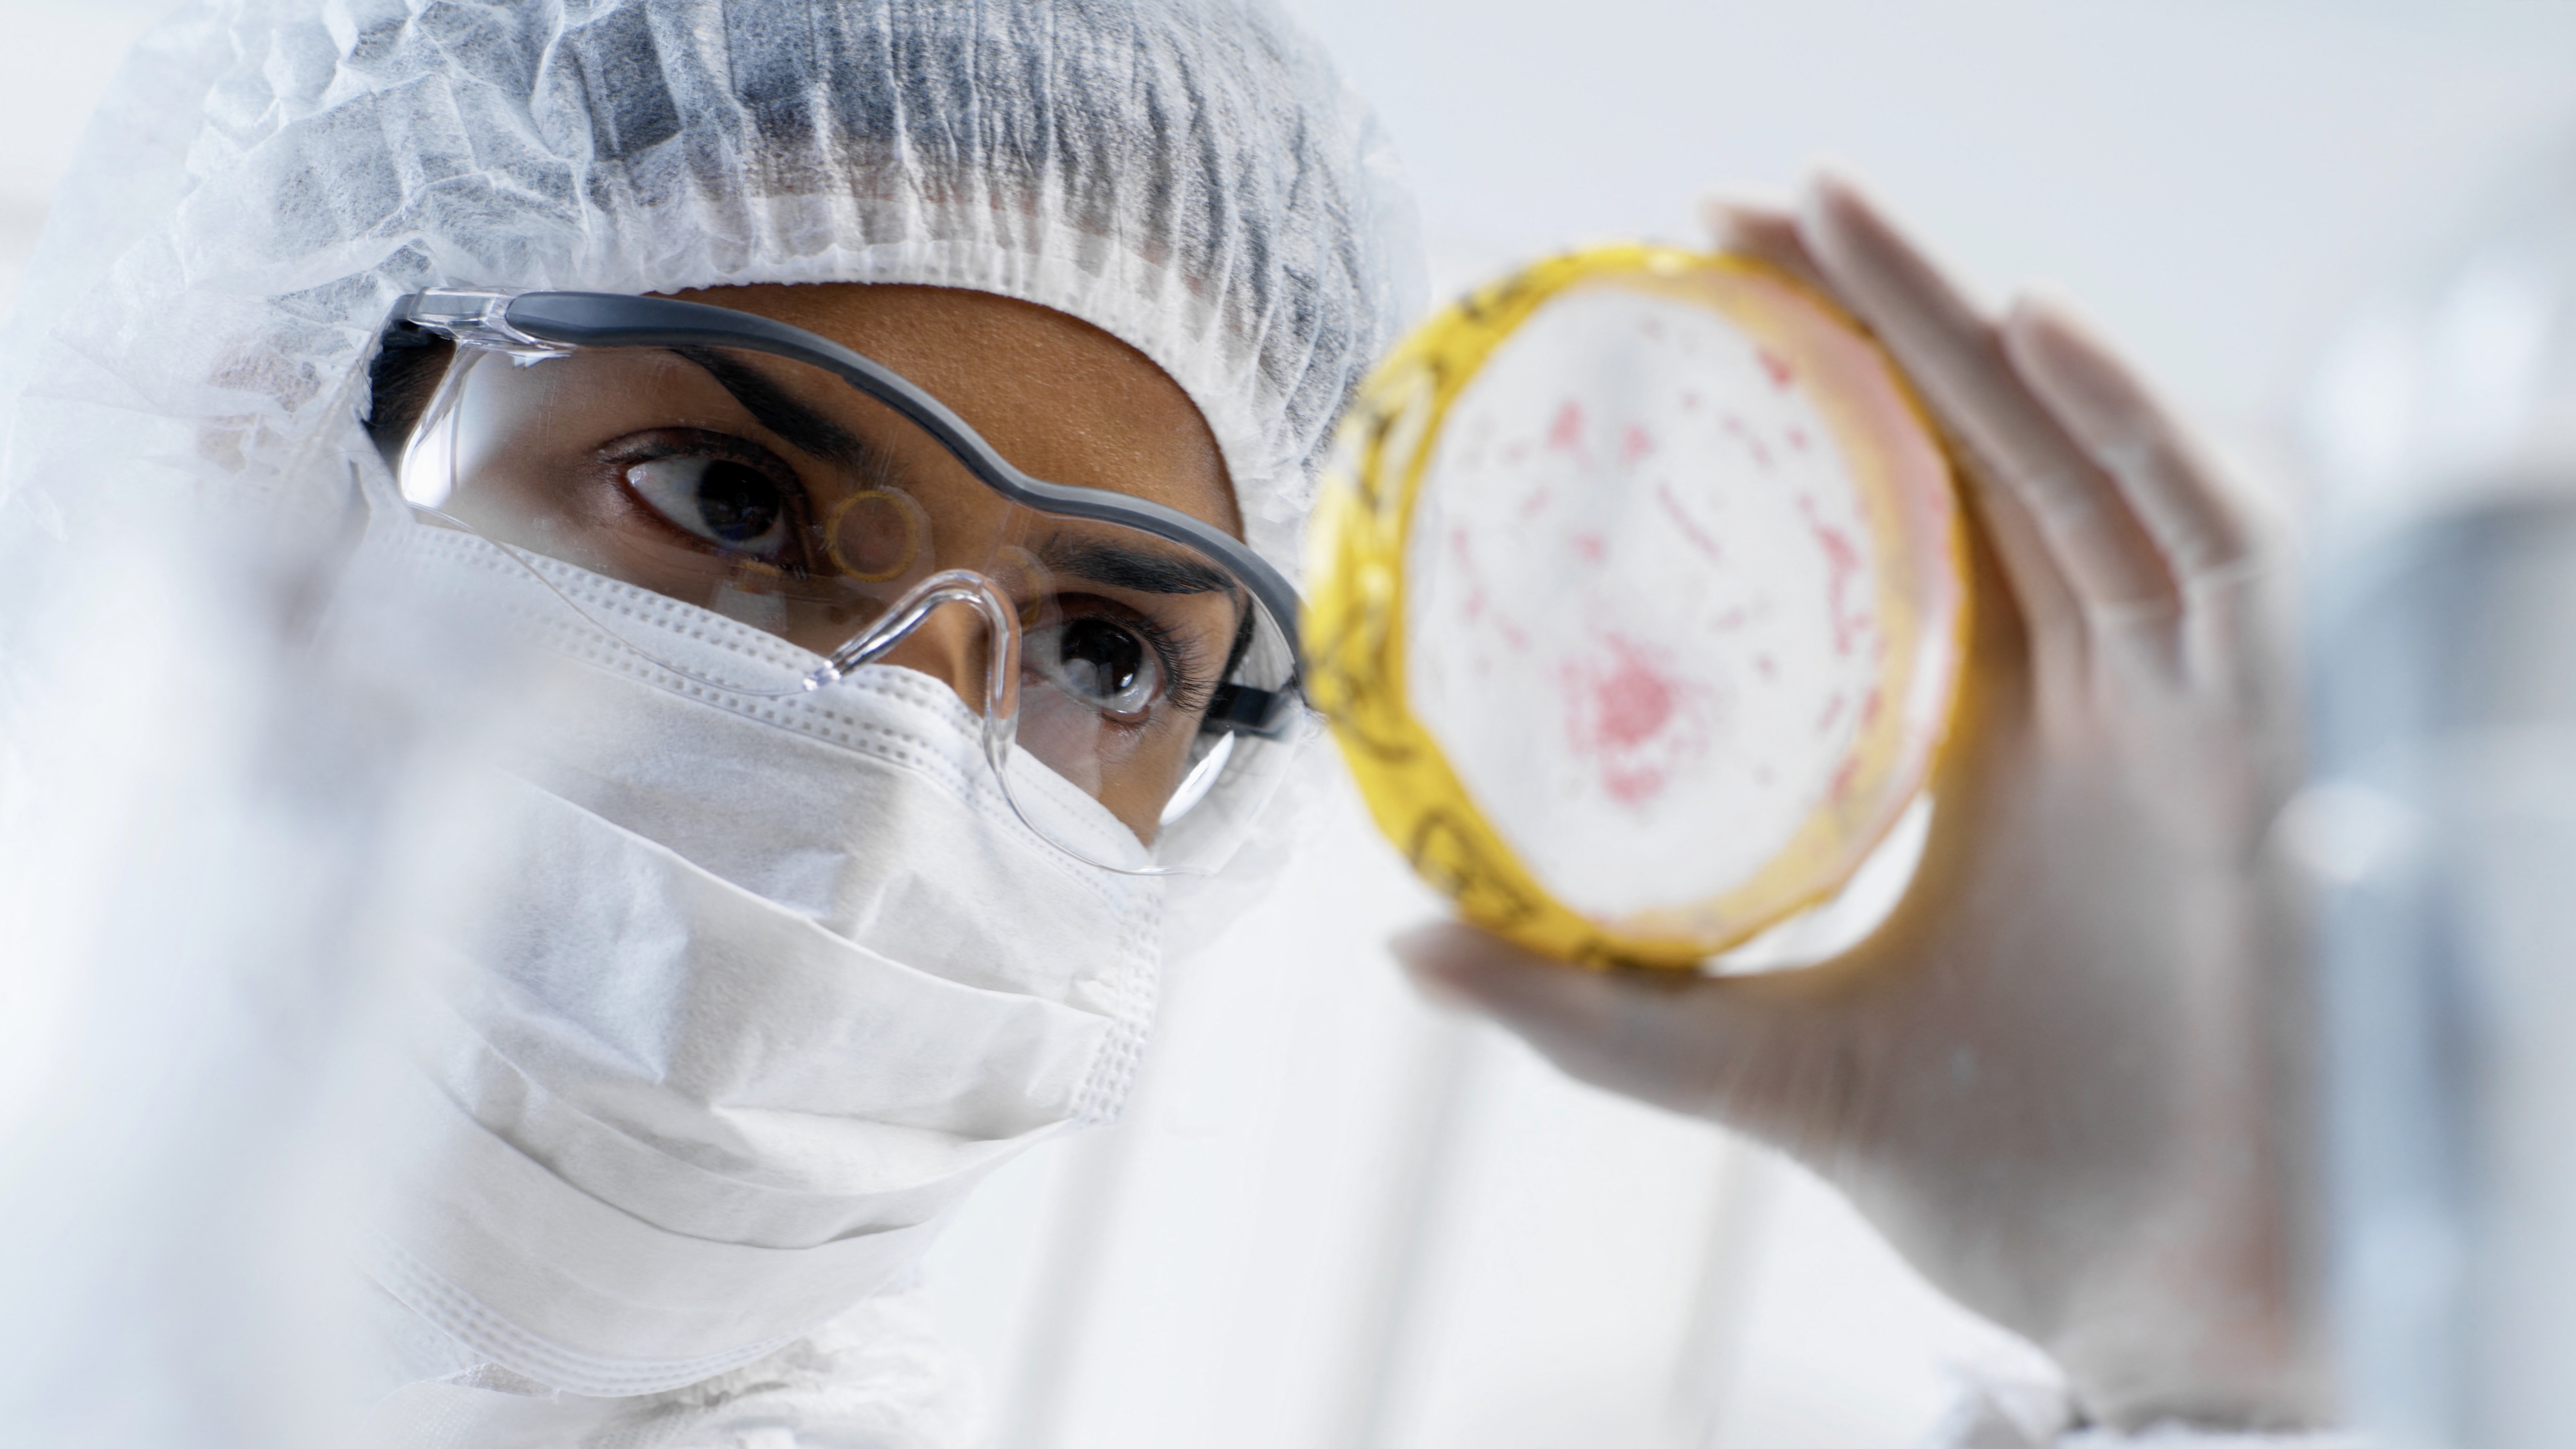 Bőven van mit javítani a halálos vírusokat kezelő laborok biztonságának szabályozásán